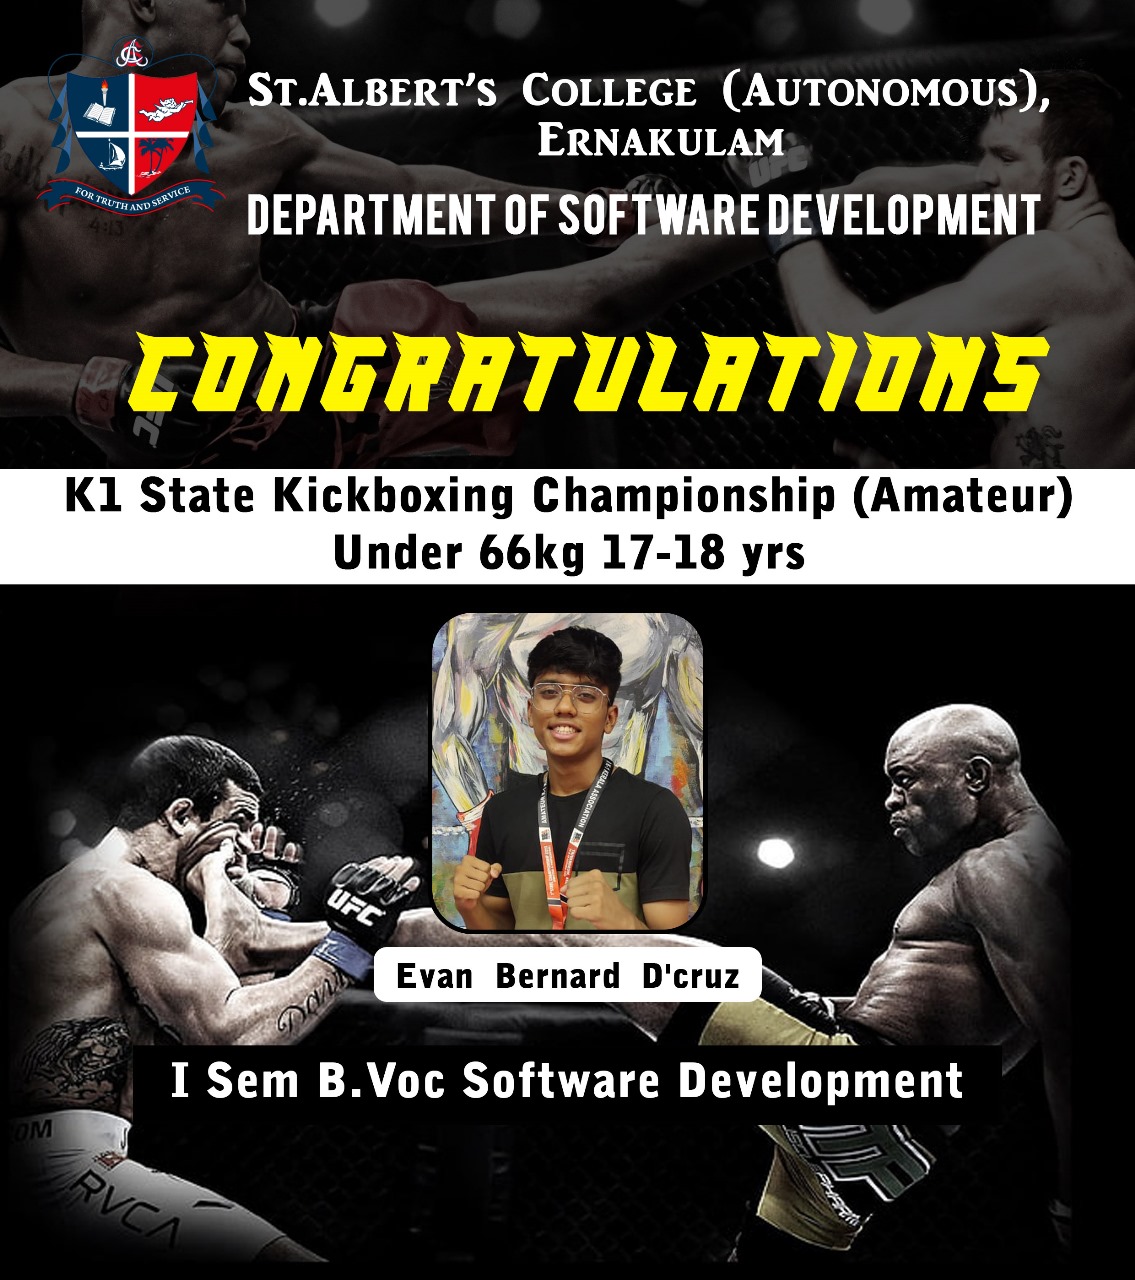 Congratulations Evan Bernard D’cruz